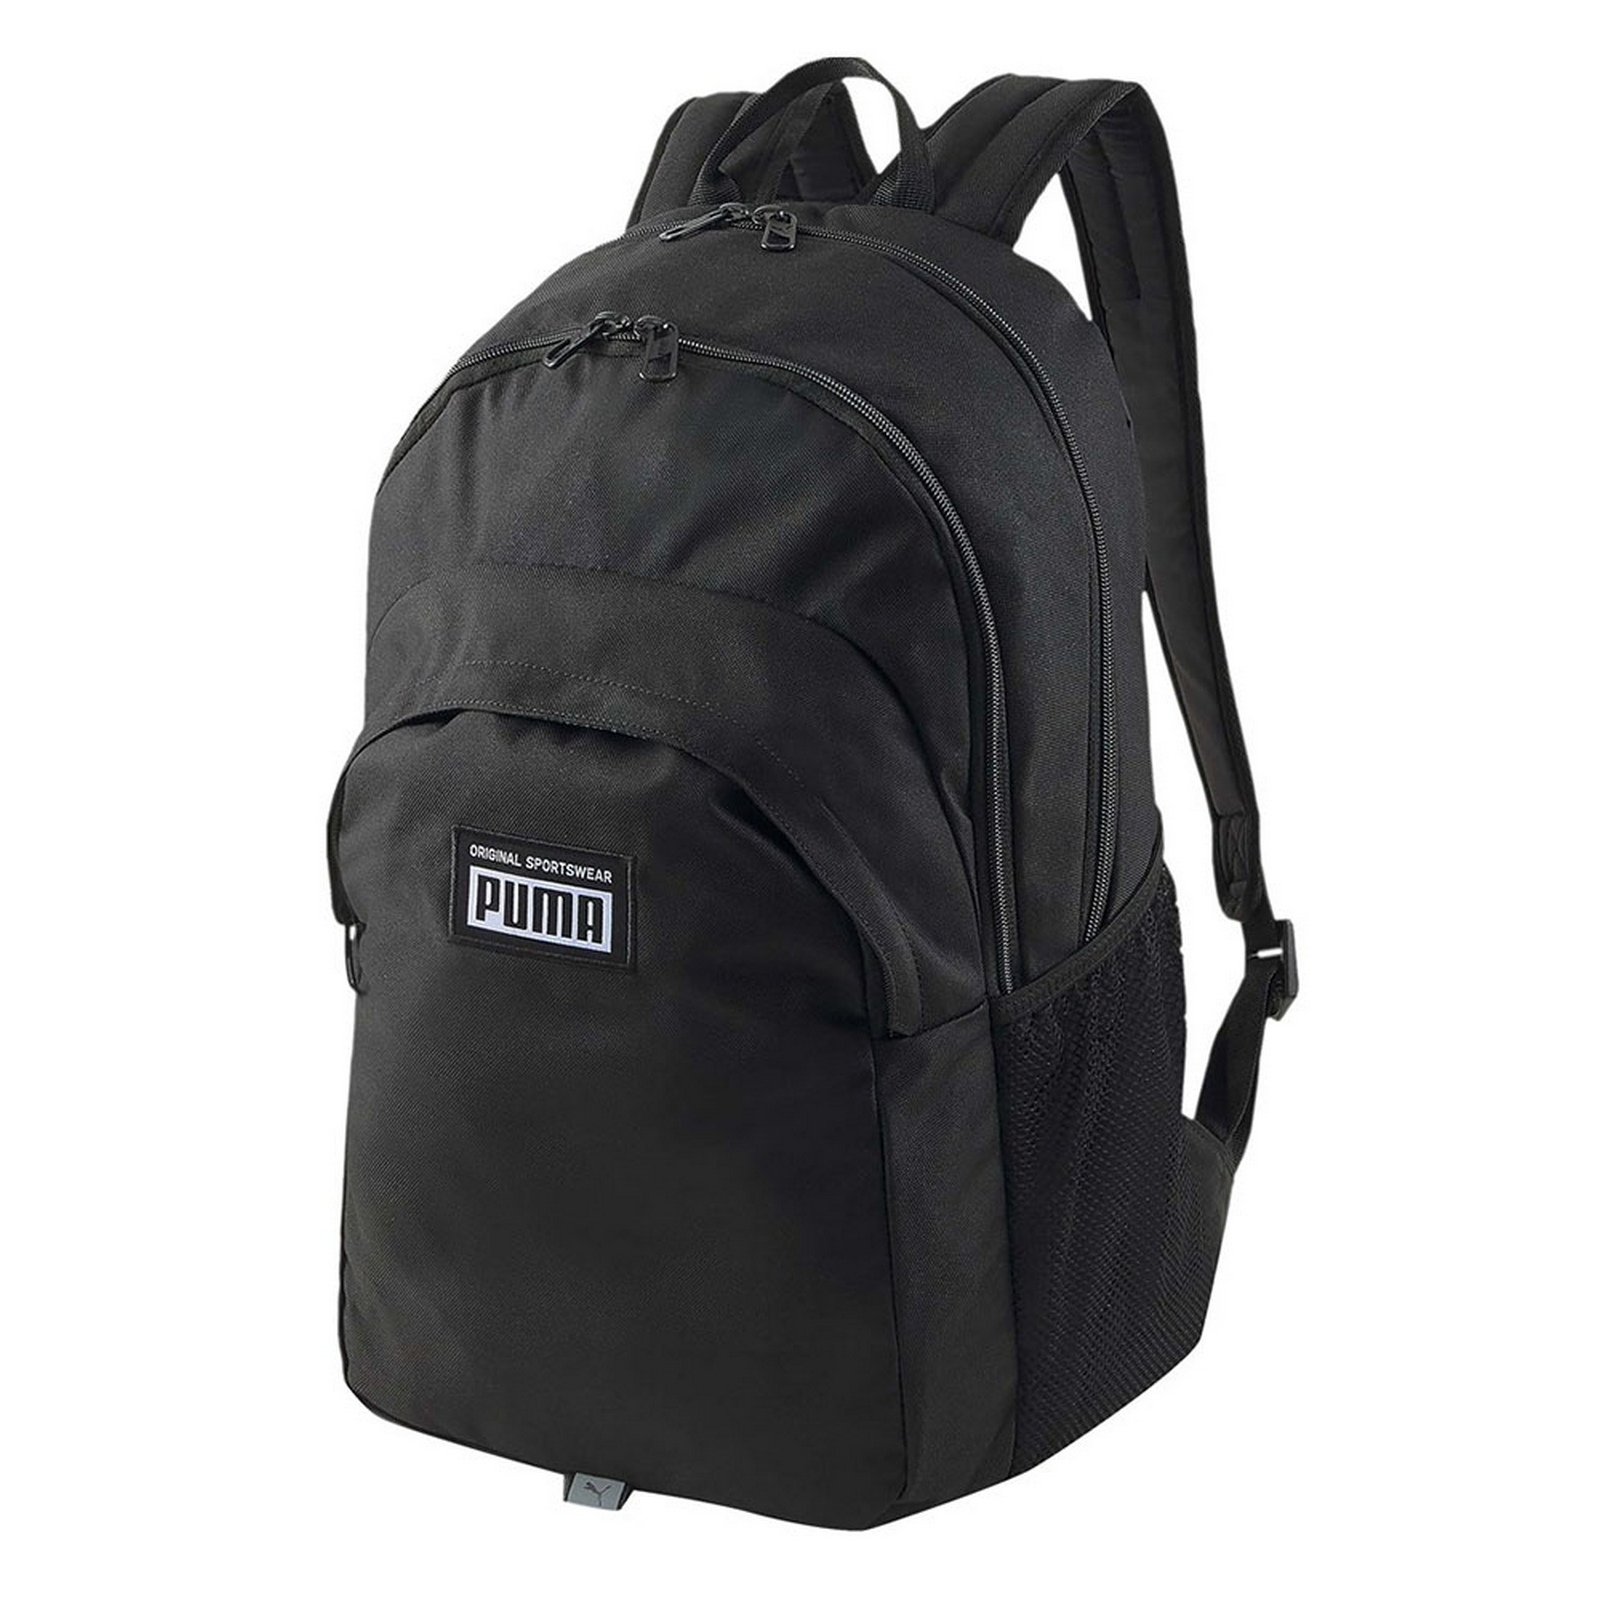   Academy Backpack,  Puma 07913301 